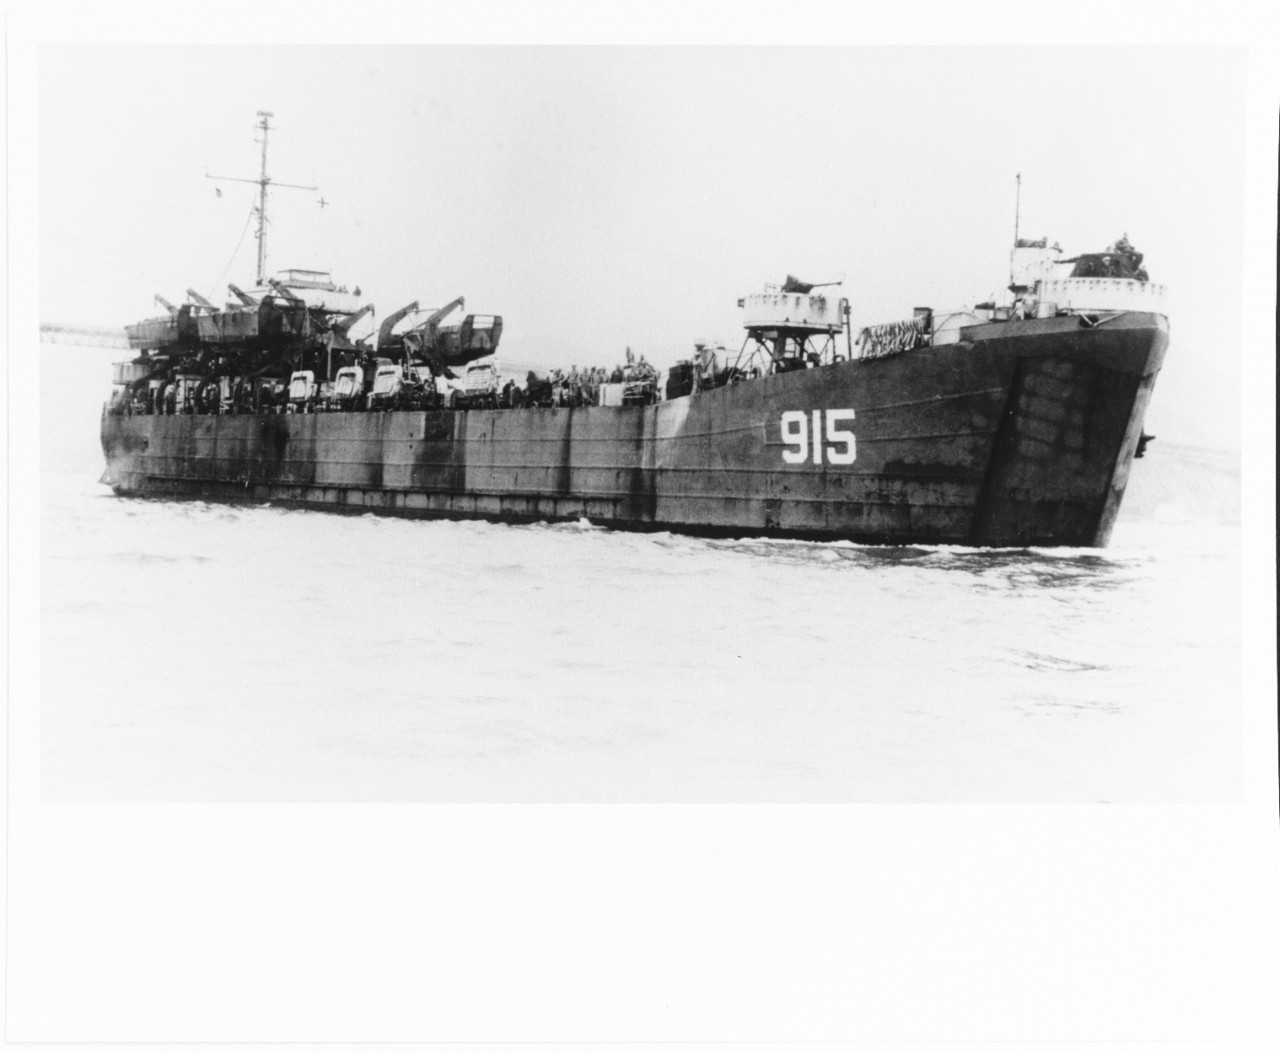 USS LST-915